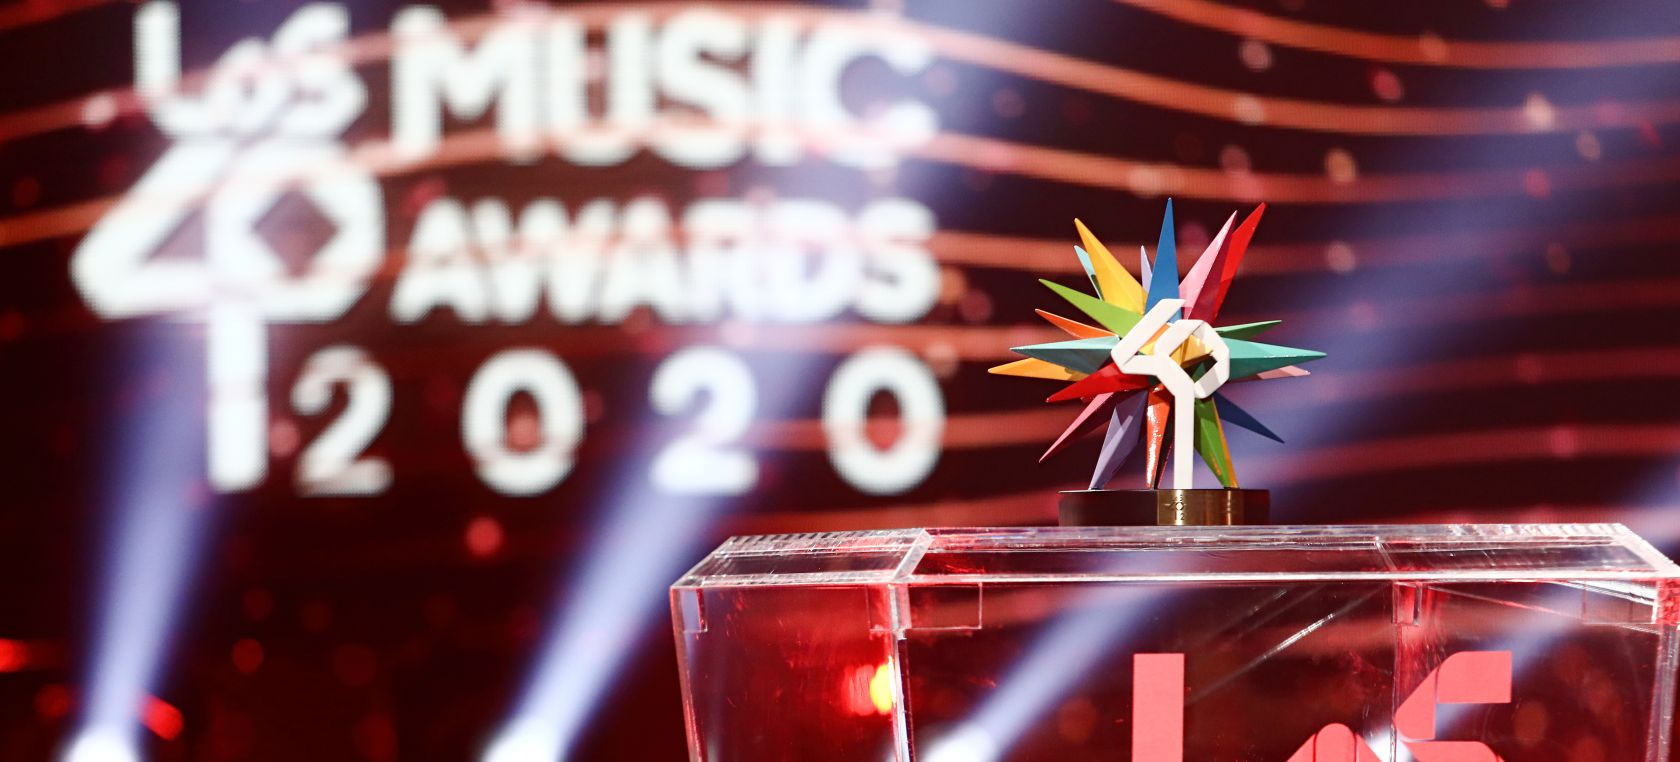 LOS40 Music Awards 2020